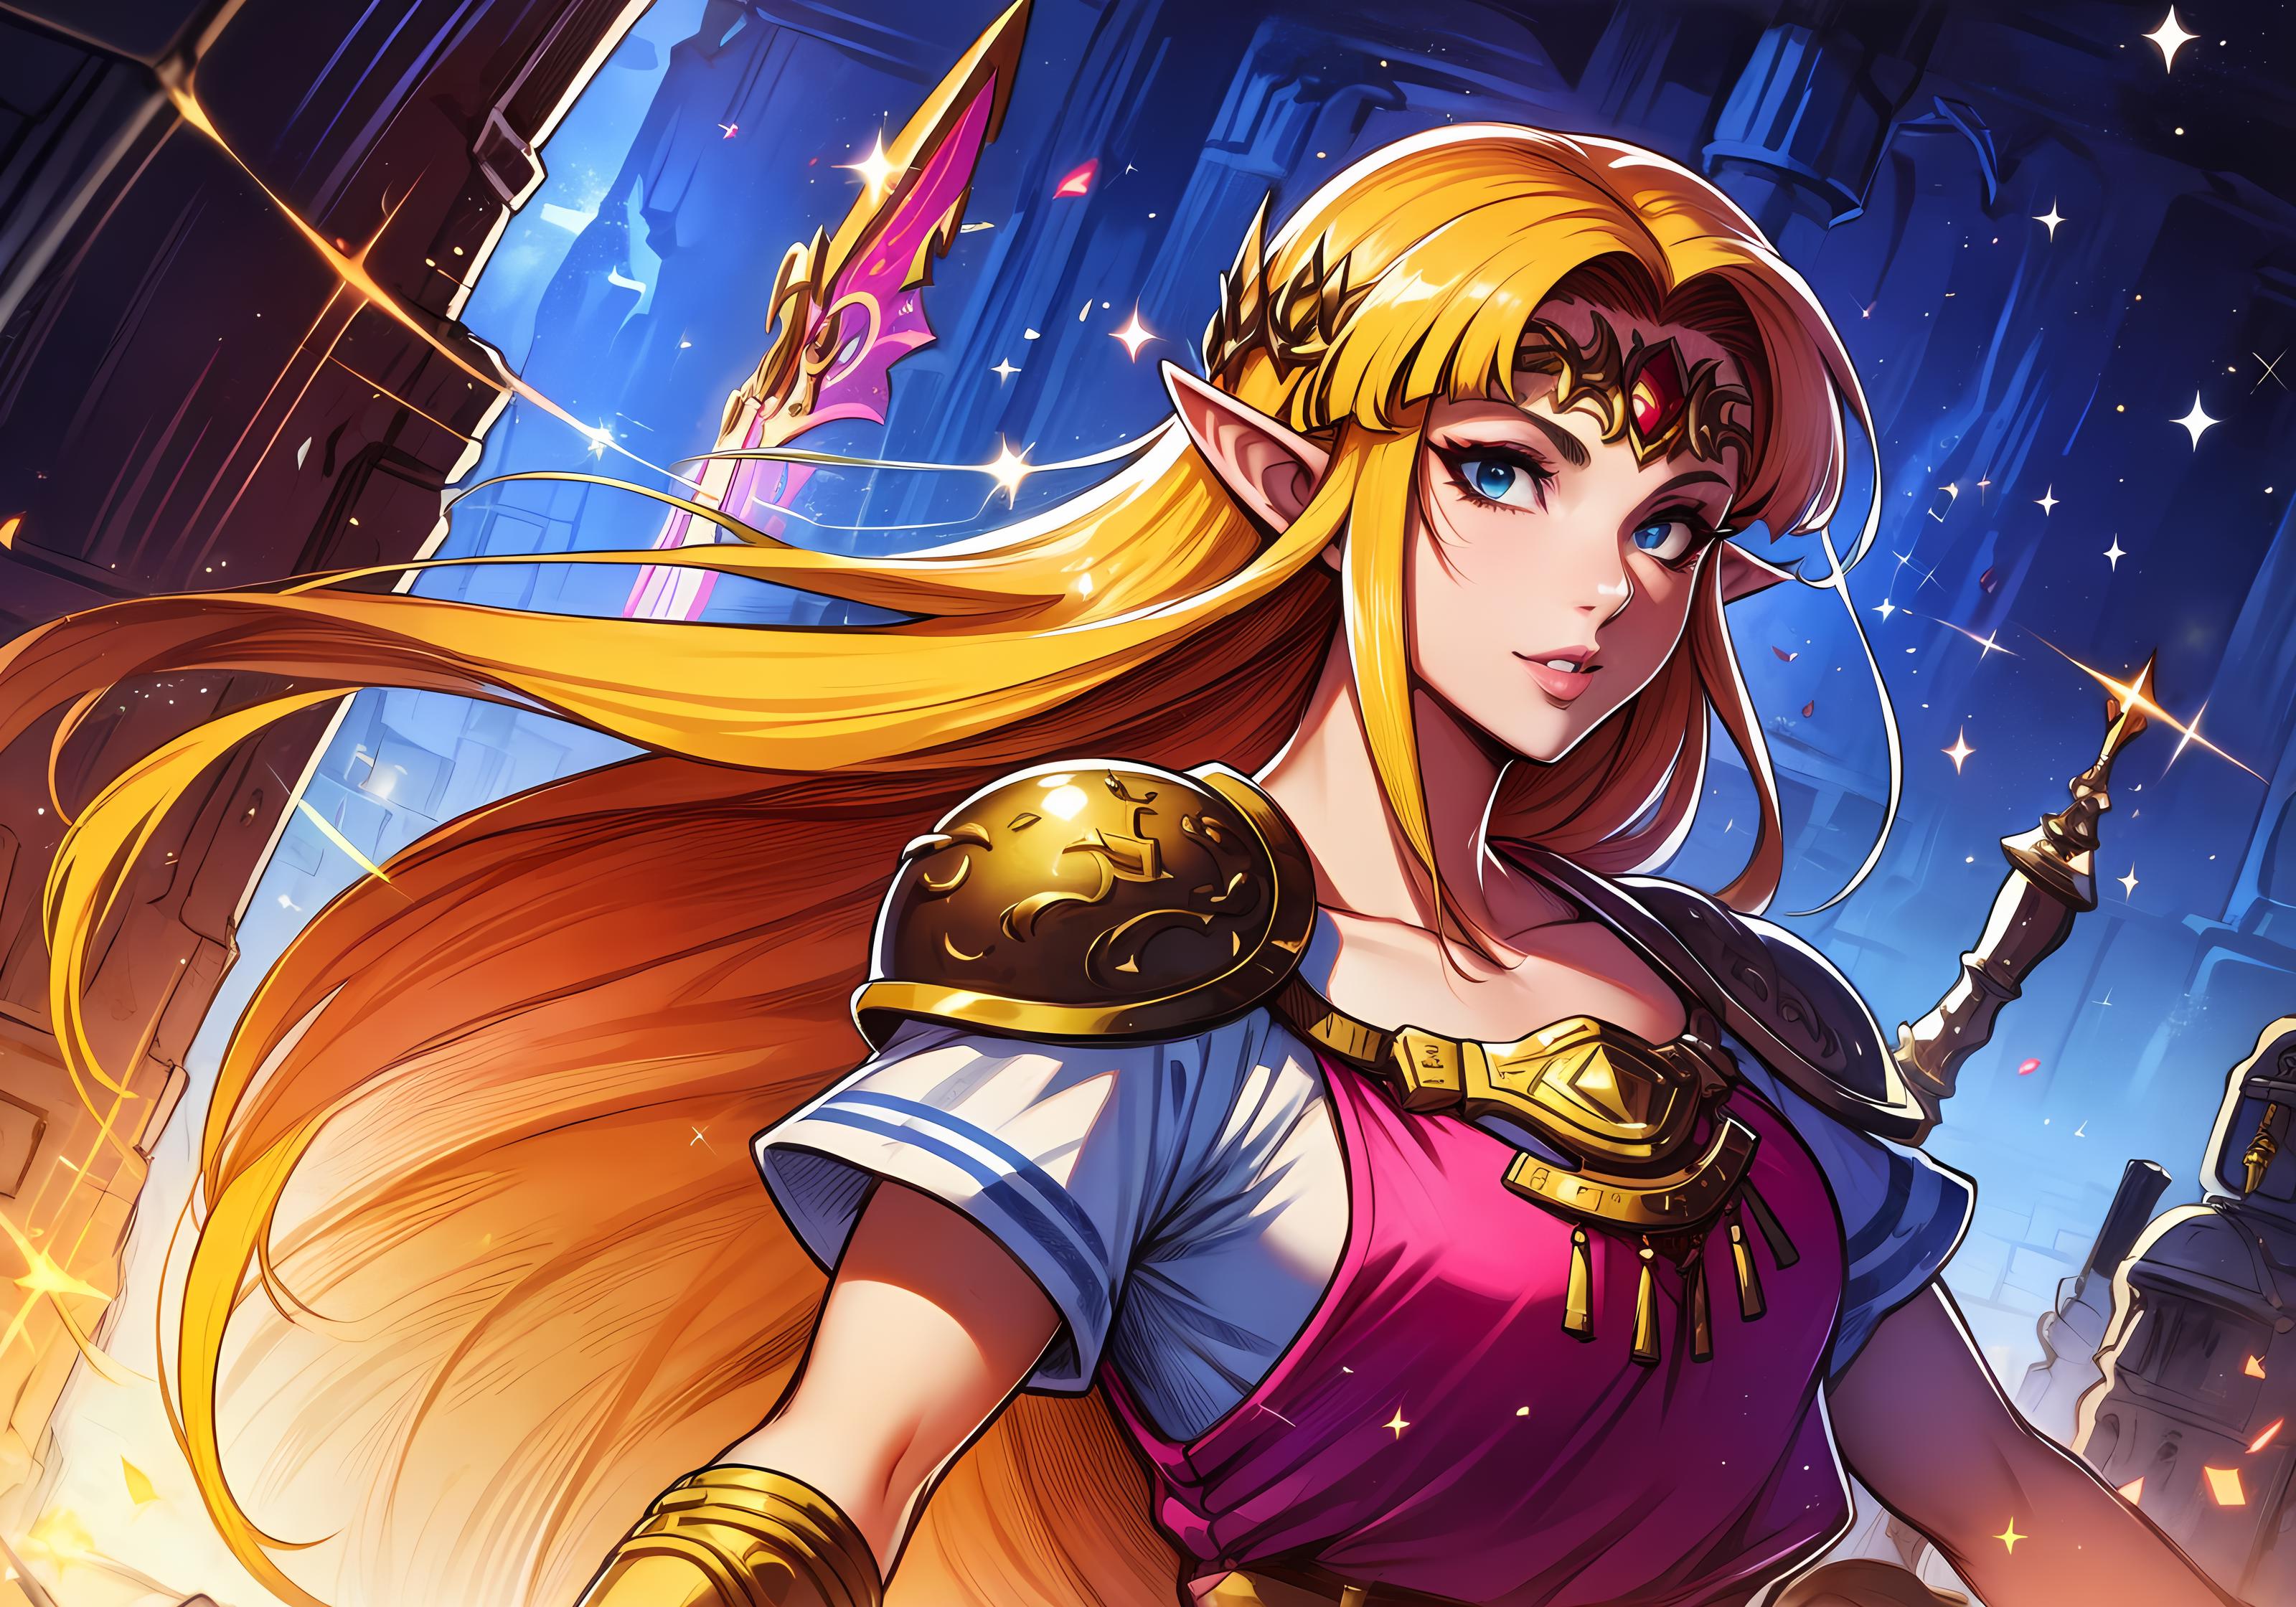 Zelda (ALBW/ALttP) image by RIXYN